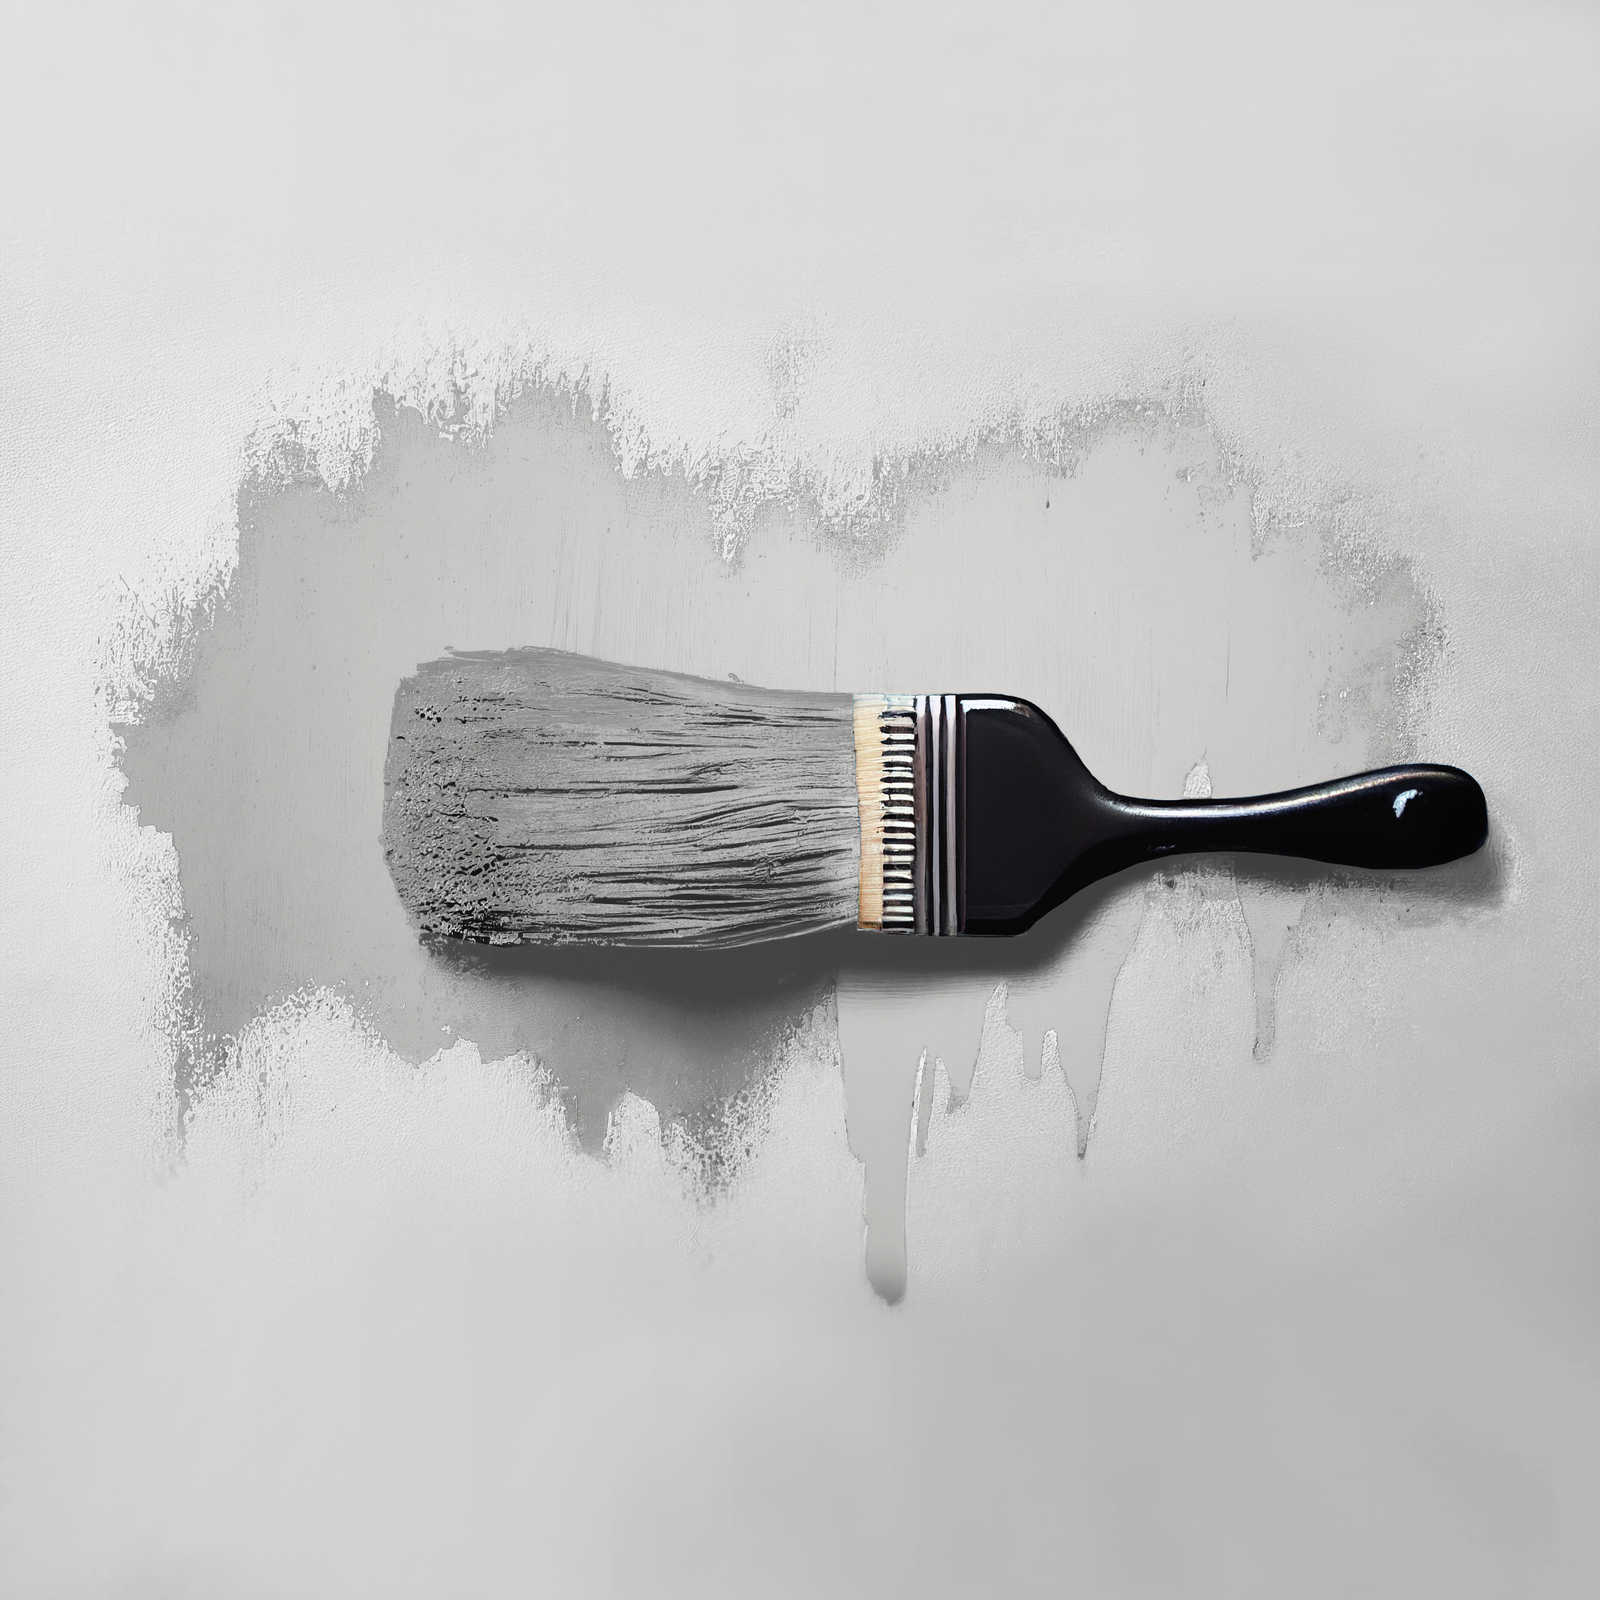             Pintura mural TCK1009 »Sprat Fish« en gris plata liso – 5,0 litro
        